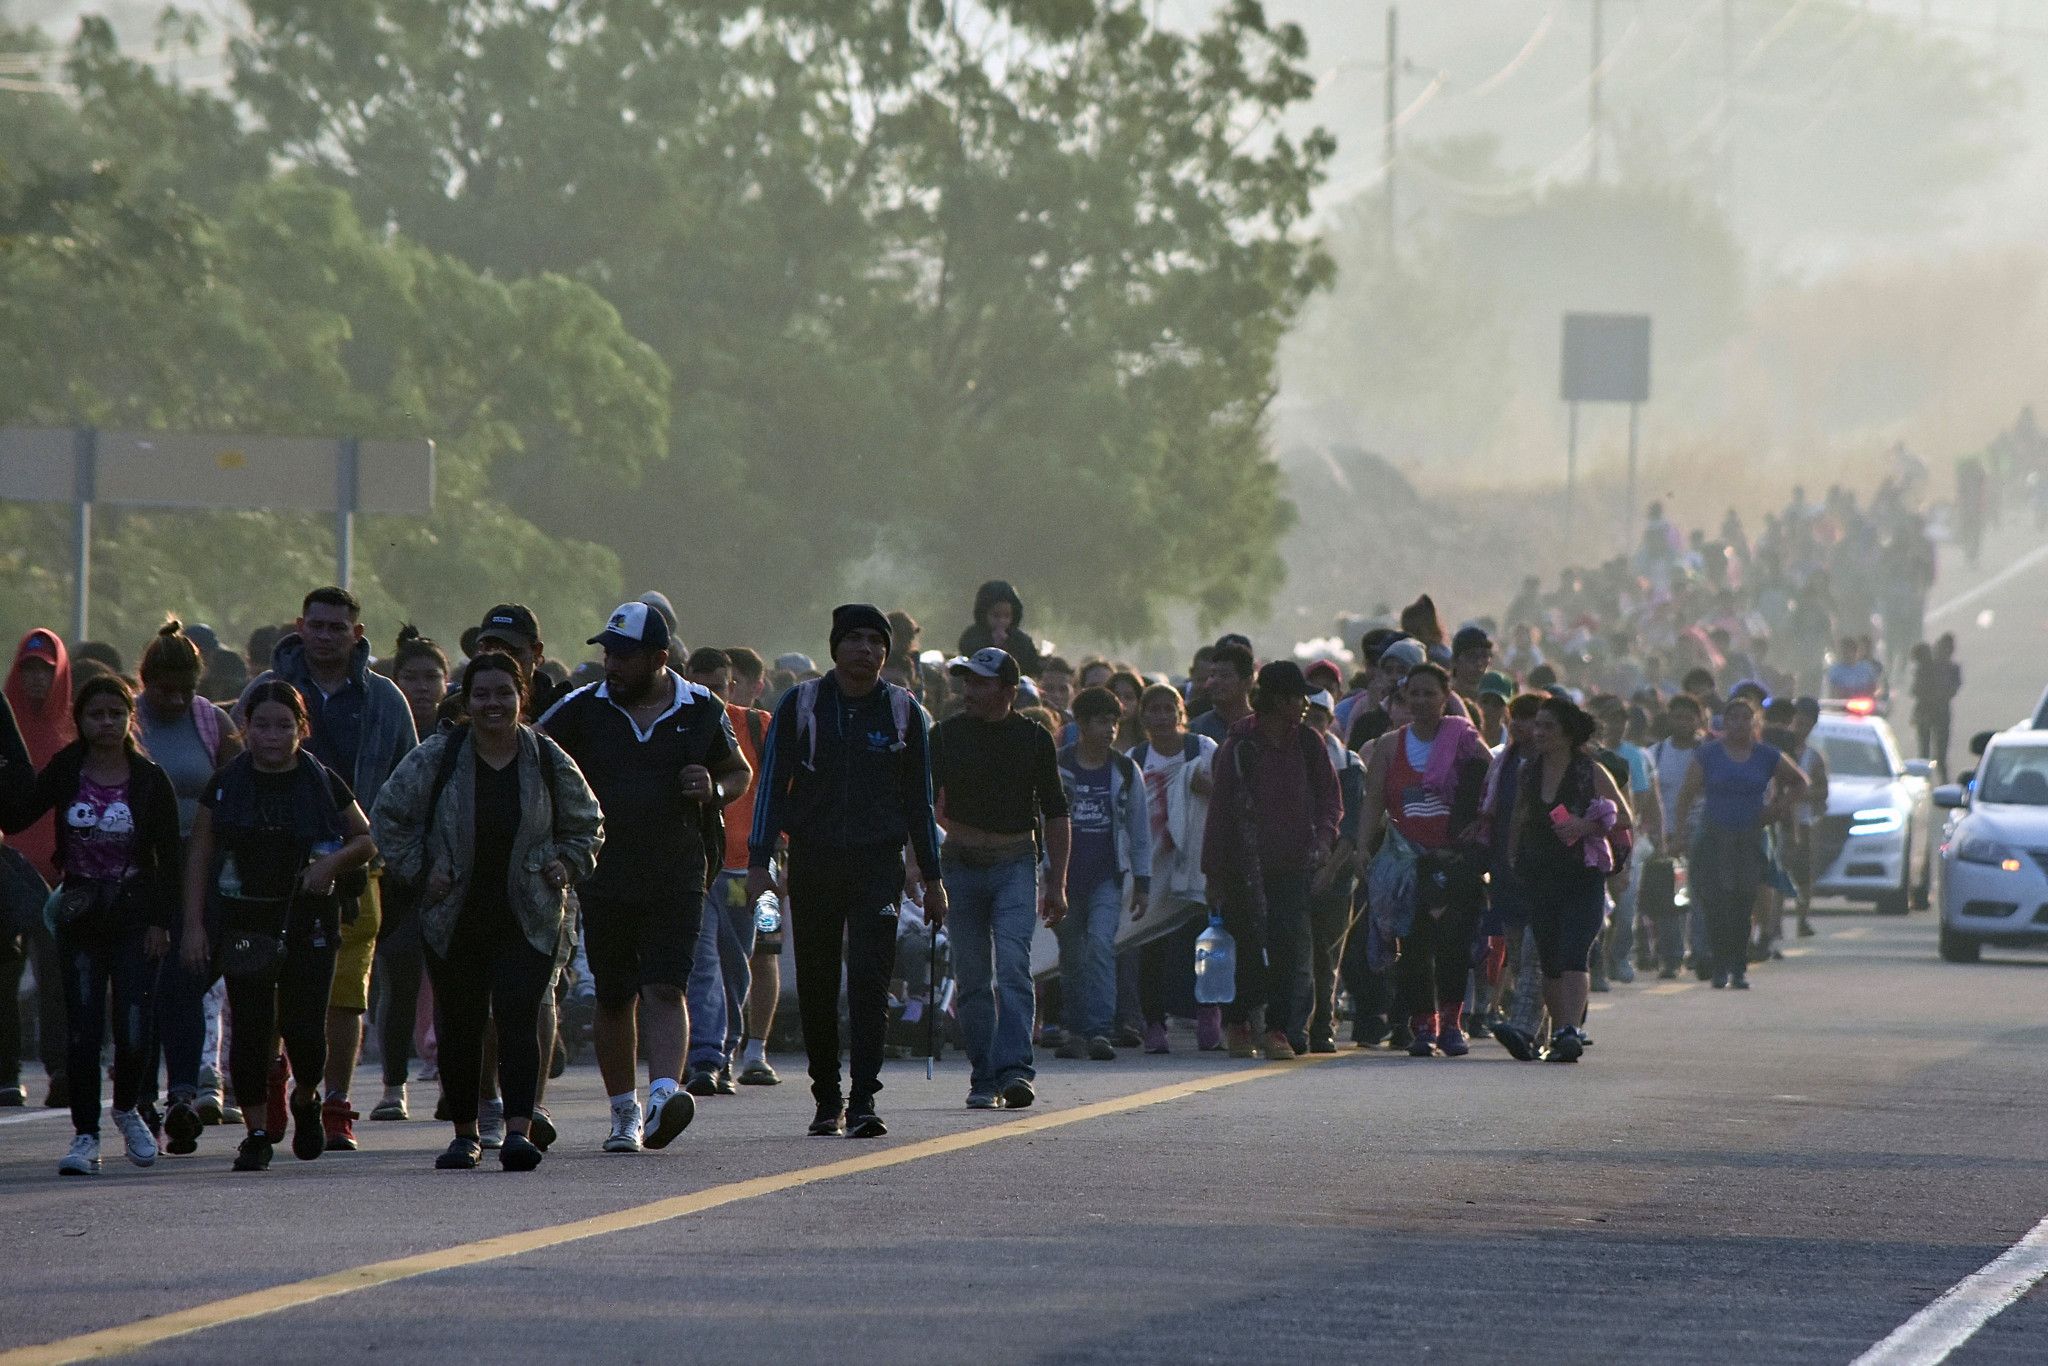 Des migrants traversant illégalement pour voter Biden: une infox